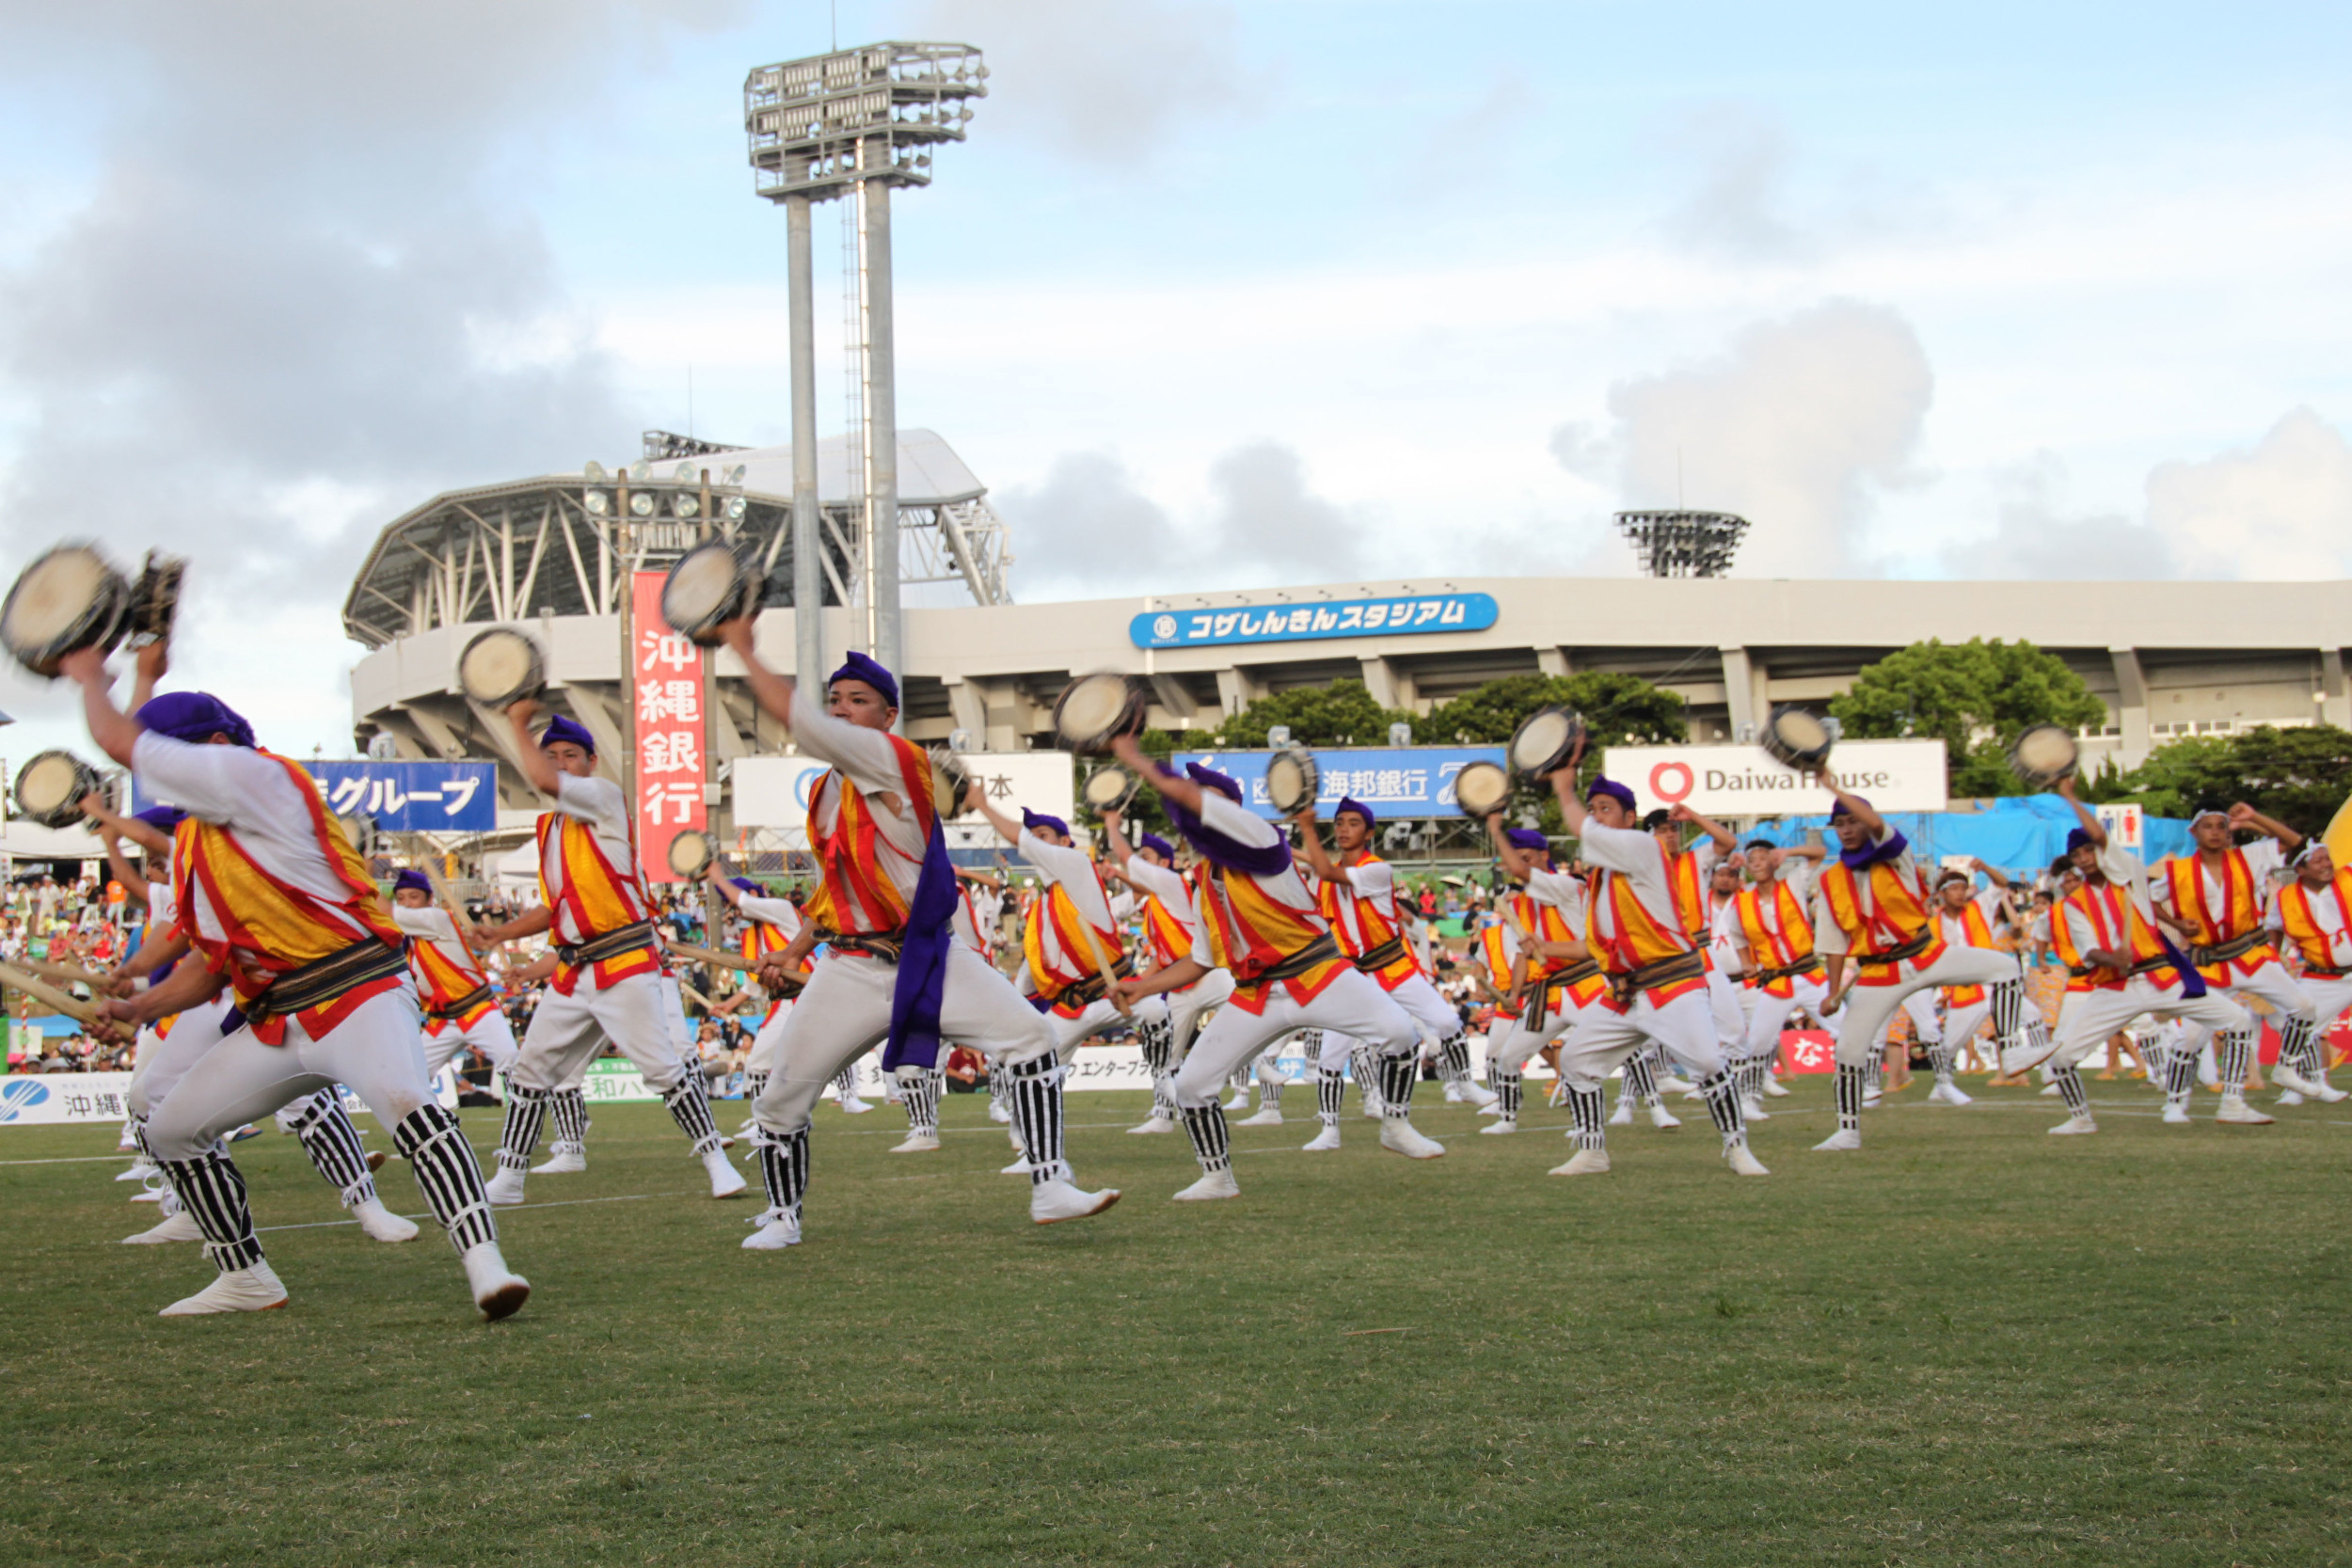 演舞の華とも言える締太鼓。全身を使った軽快でダイナミックな動きが観客を魅了する <br>写真：沖縄全島エイサーまつり実行委員会